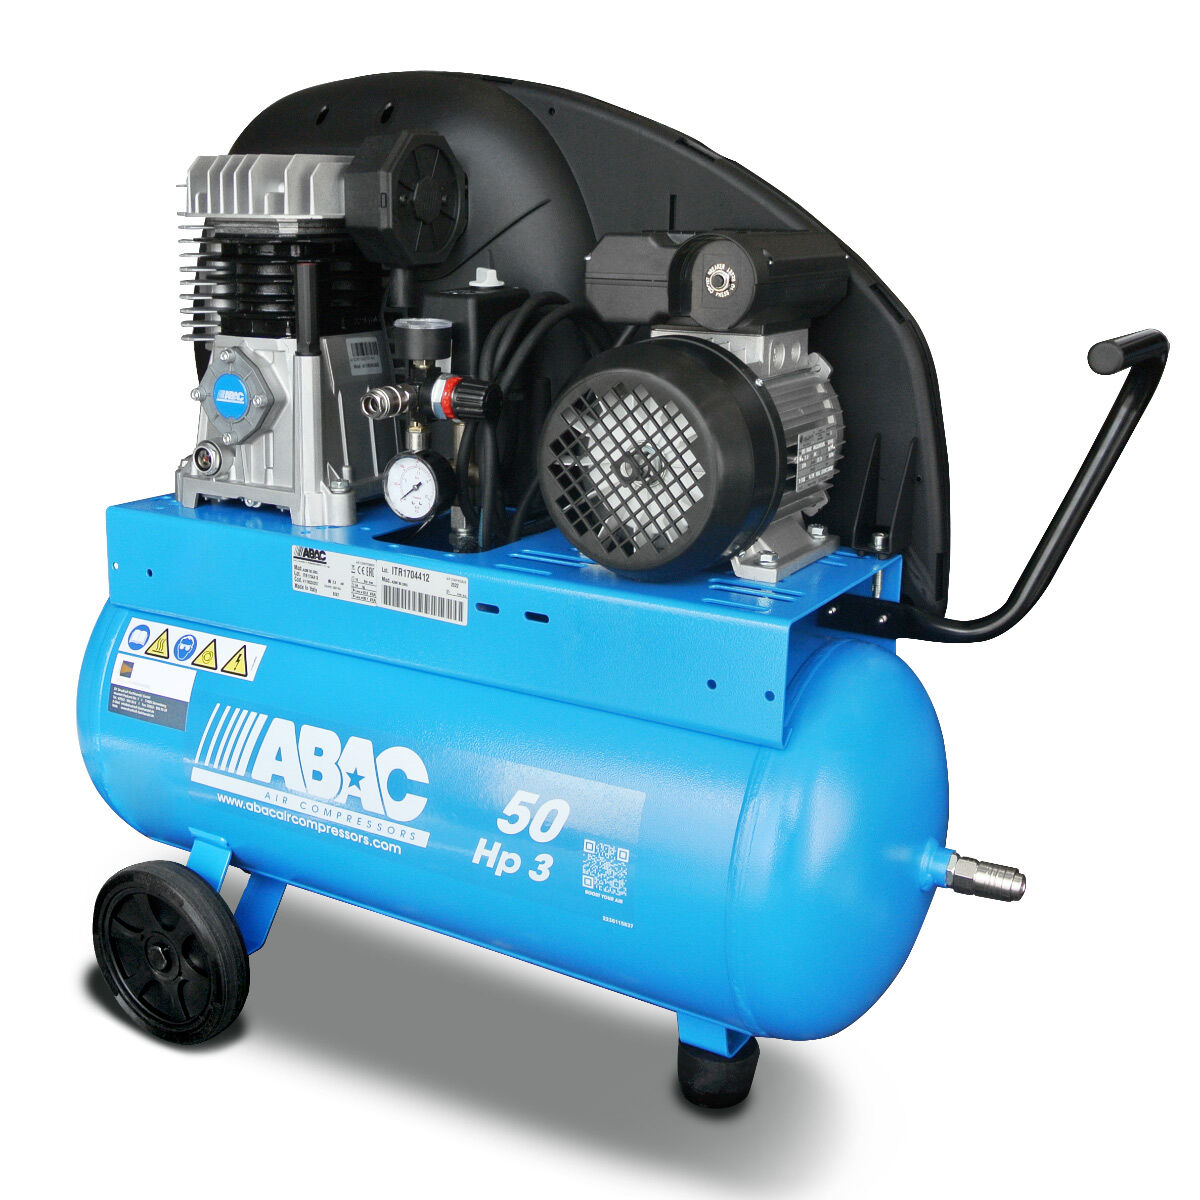 ABAC Kompressor EXT A29B 50 CM3 – Der mobile Alleskönner! (NEUES MODELL 2024)